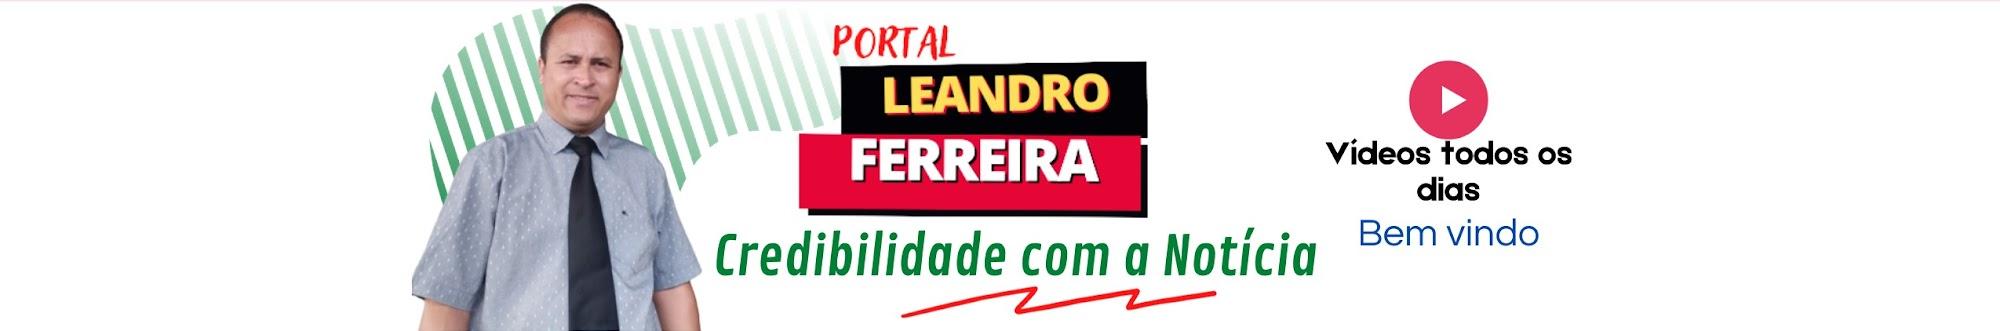 Portal Leandro Ferreira